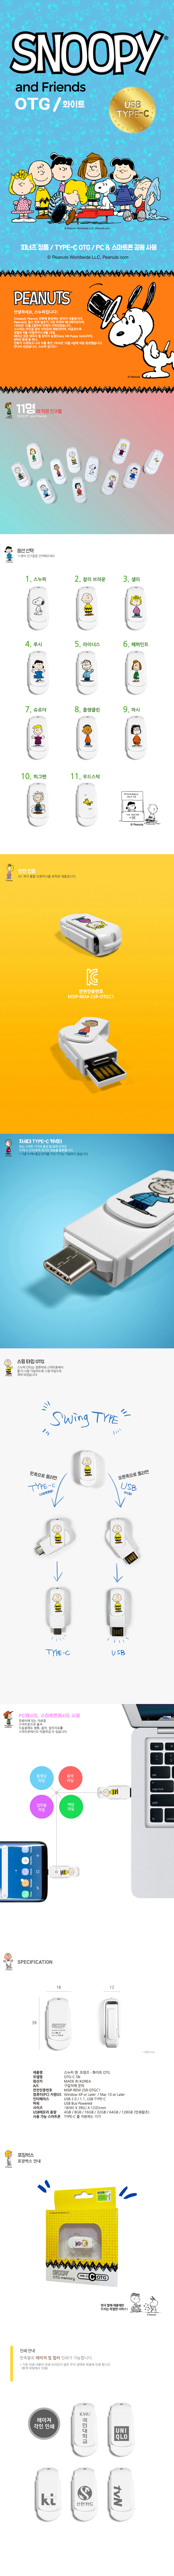 스누피 USB-C OTG 64G C-SN 23,000원 - 캠브리트 디지털, PC저장장치, USB, 캐릭터/디자인 바보사랑 스누피 USB-C OTG 64G C-SN 23,000원 - 캠브리트 디지털, PC저장장치, USB, 캐릭터/디자인 바보사랑